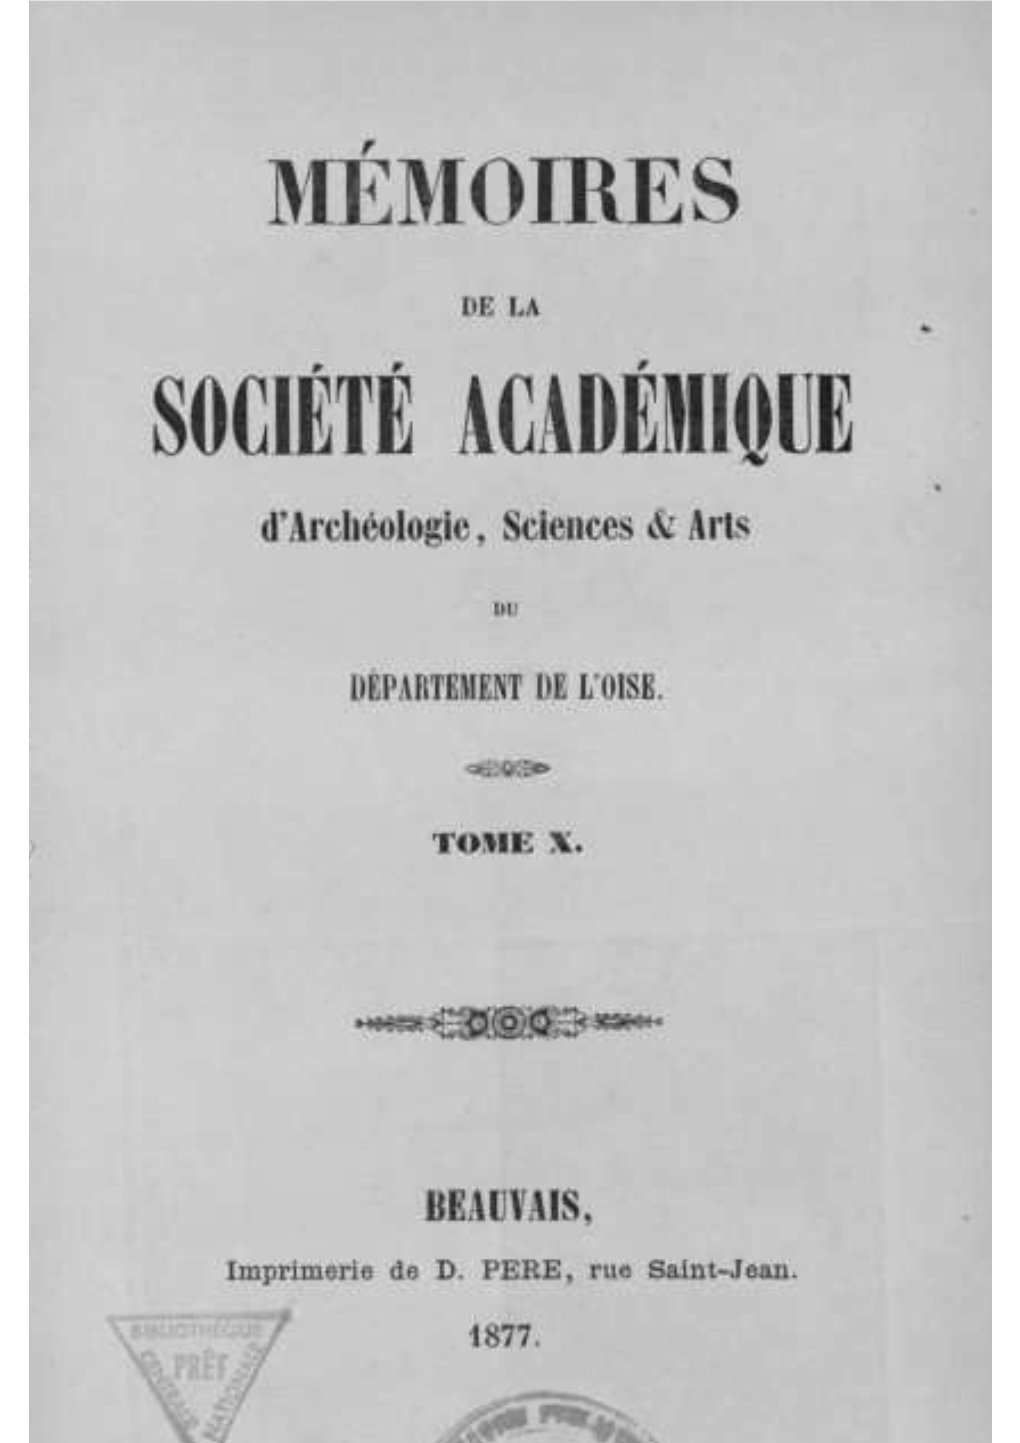 SOCIÉTÉ ACADÉMIQUE D'archéologie,Sciences& Arts